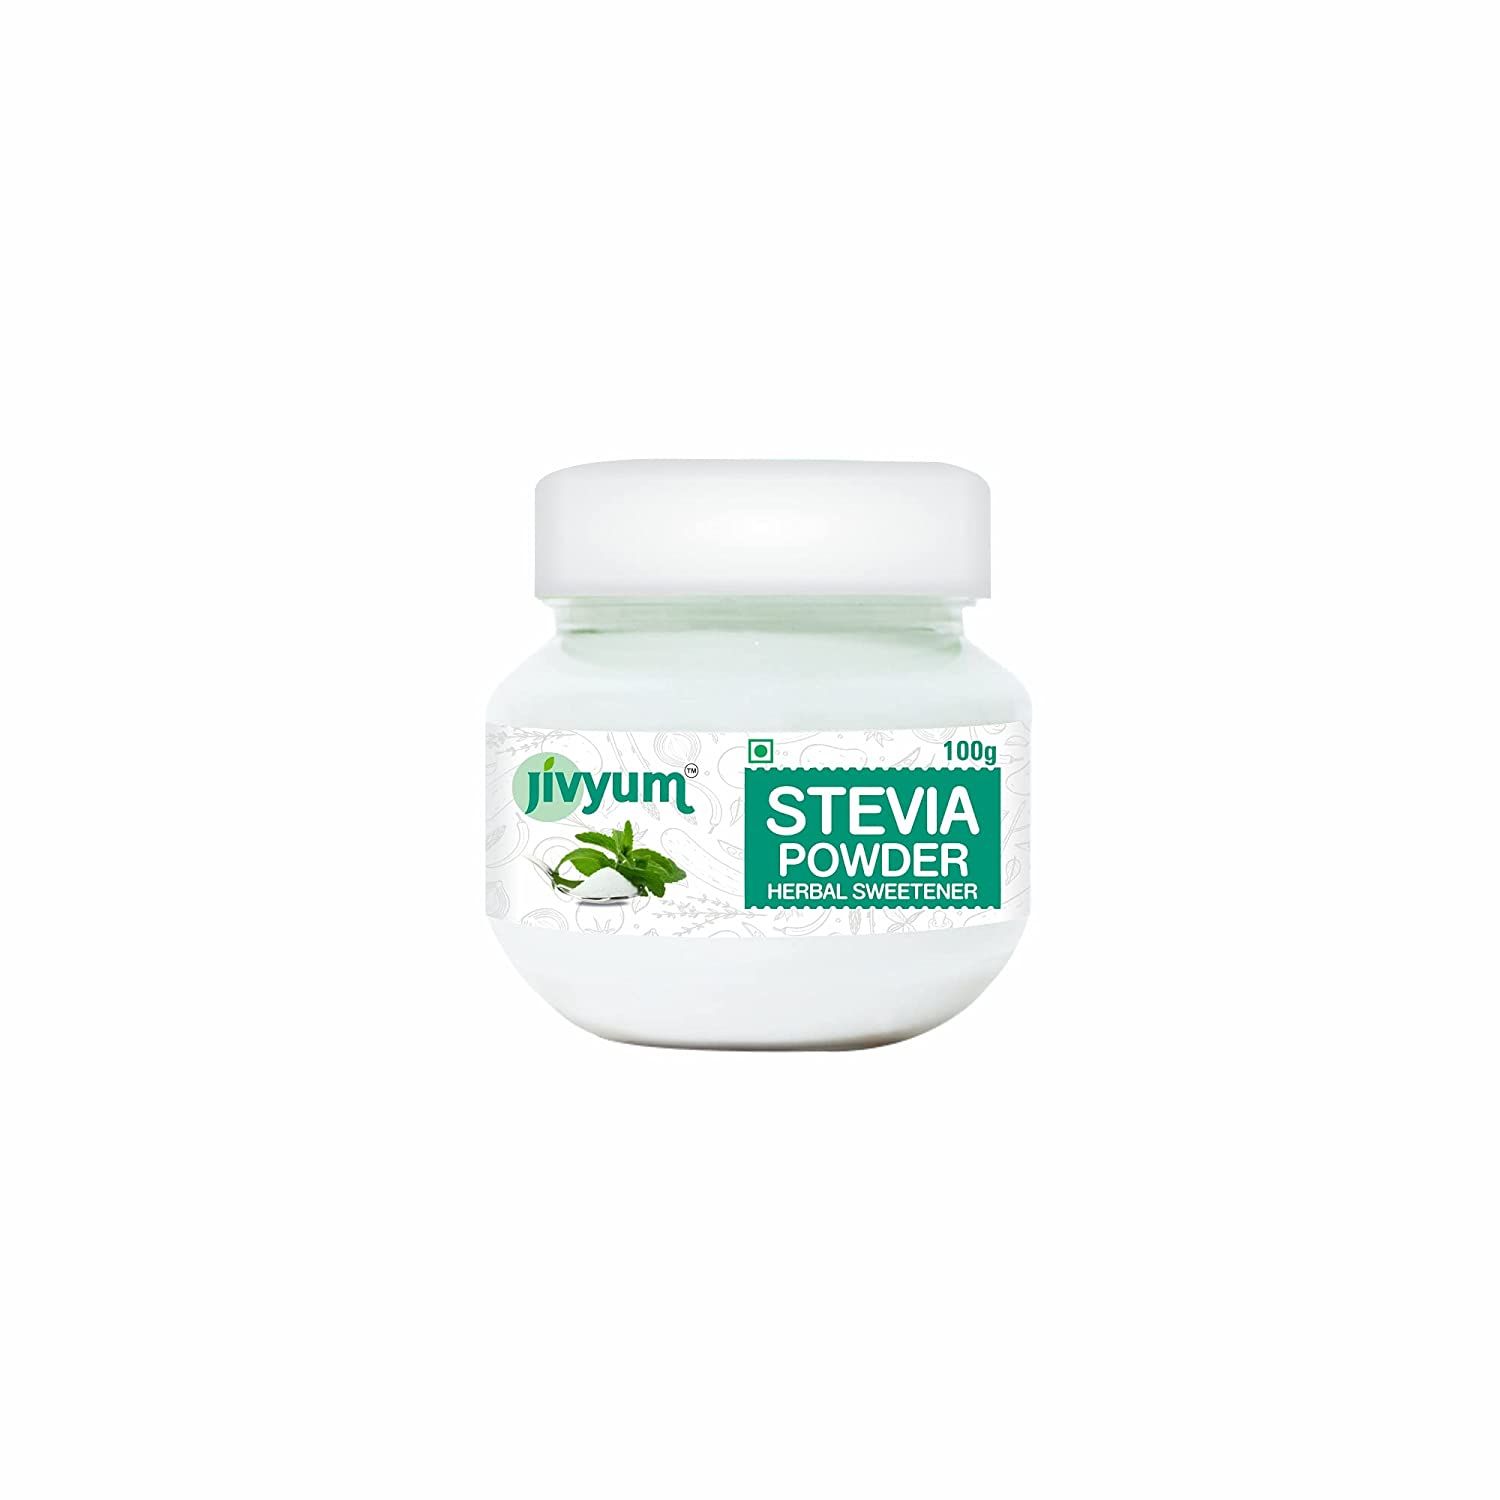 Jivyum Stevia Powder Image